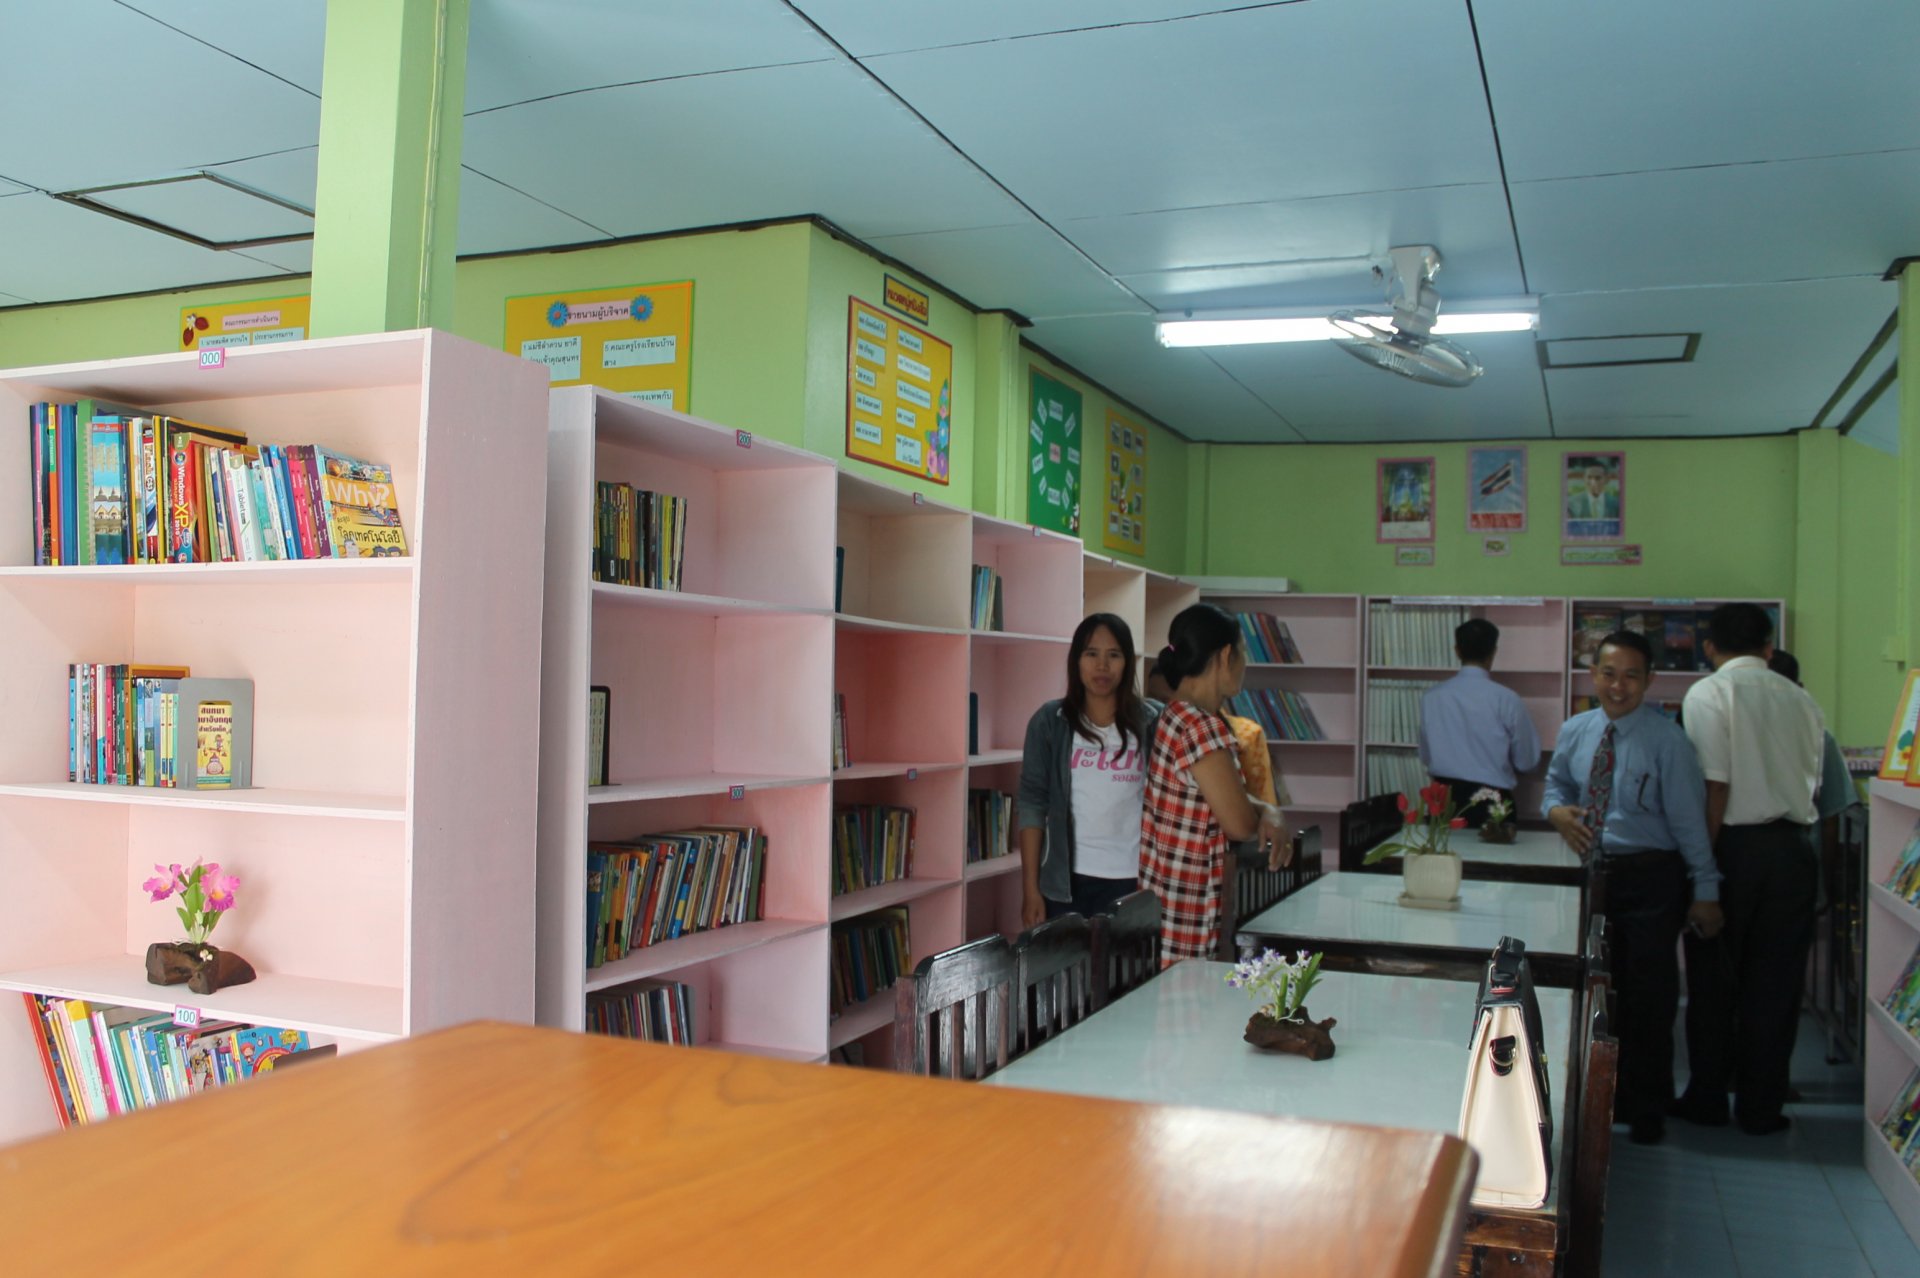 มอบห้องสมุดกรีนวิงให้โรงเรียนบ้านสาง อ.เมือง จ.พะเยา วันที่ 11 ก.ค. 2556